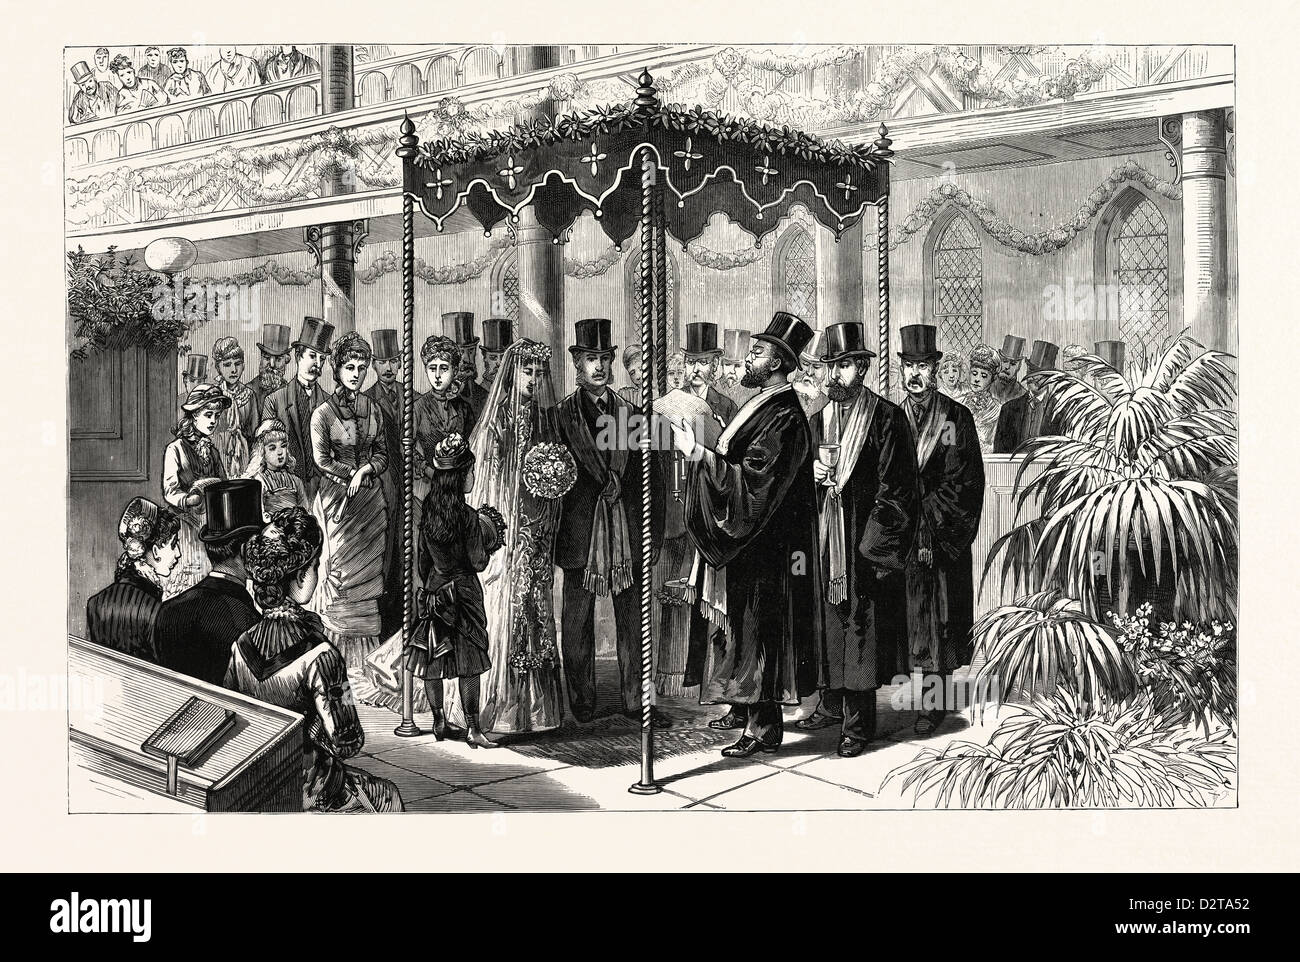 Les ROTHSCHILD-PÉROUSE MARIAGE À LONDRES, le 19 janvier, la cérémonie de l'hébreu sous le dais, UK, gravure 1880 1881 Banque D'Images